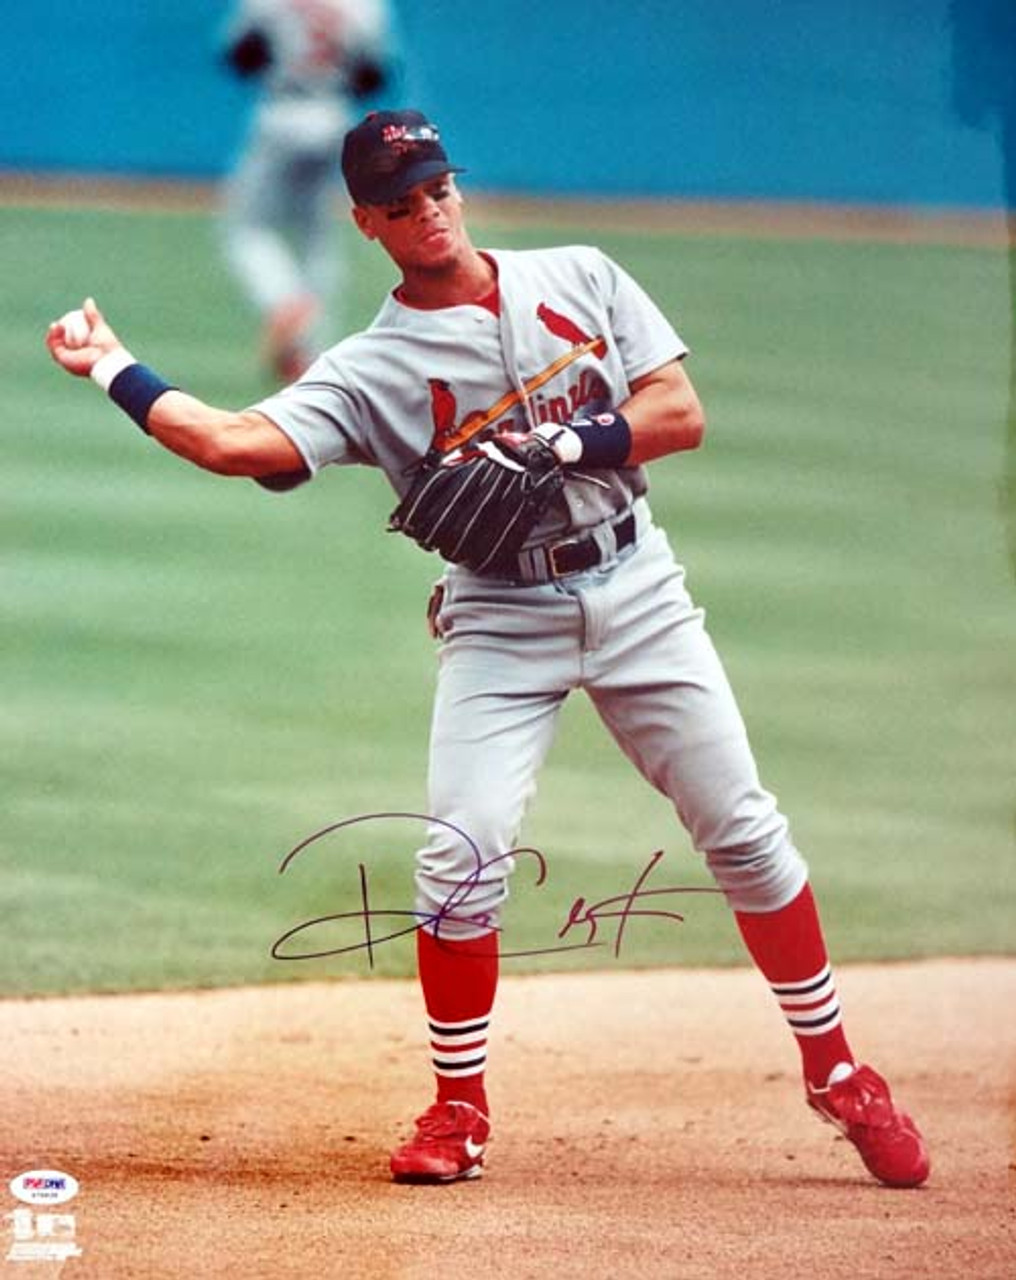 1982 St. Louis Cardinals Autographed 16x20